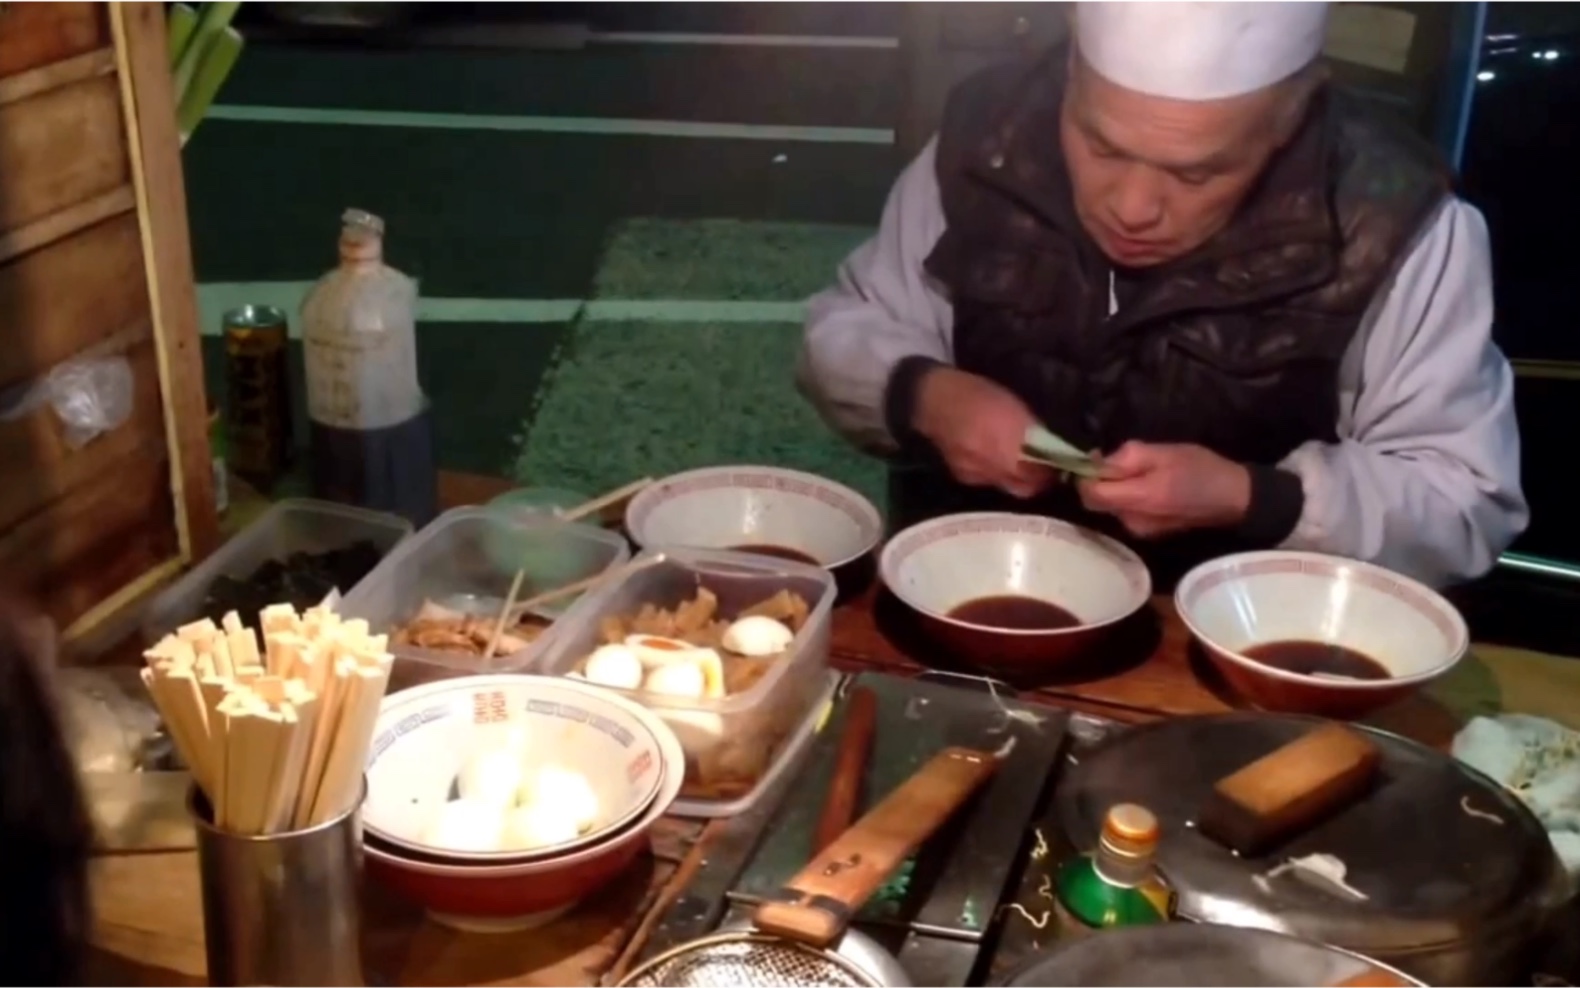 【日本平民拉面就在马路边煮】这位大爷就一个人煮面收钱收拾碗 但感觉非常有风味 很想尝试一下